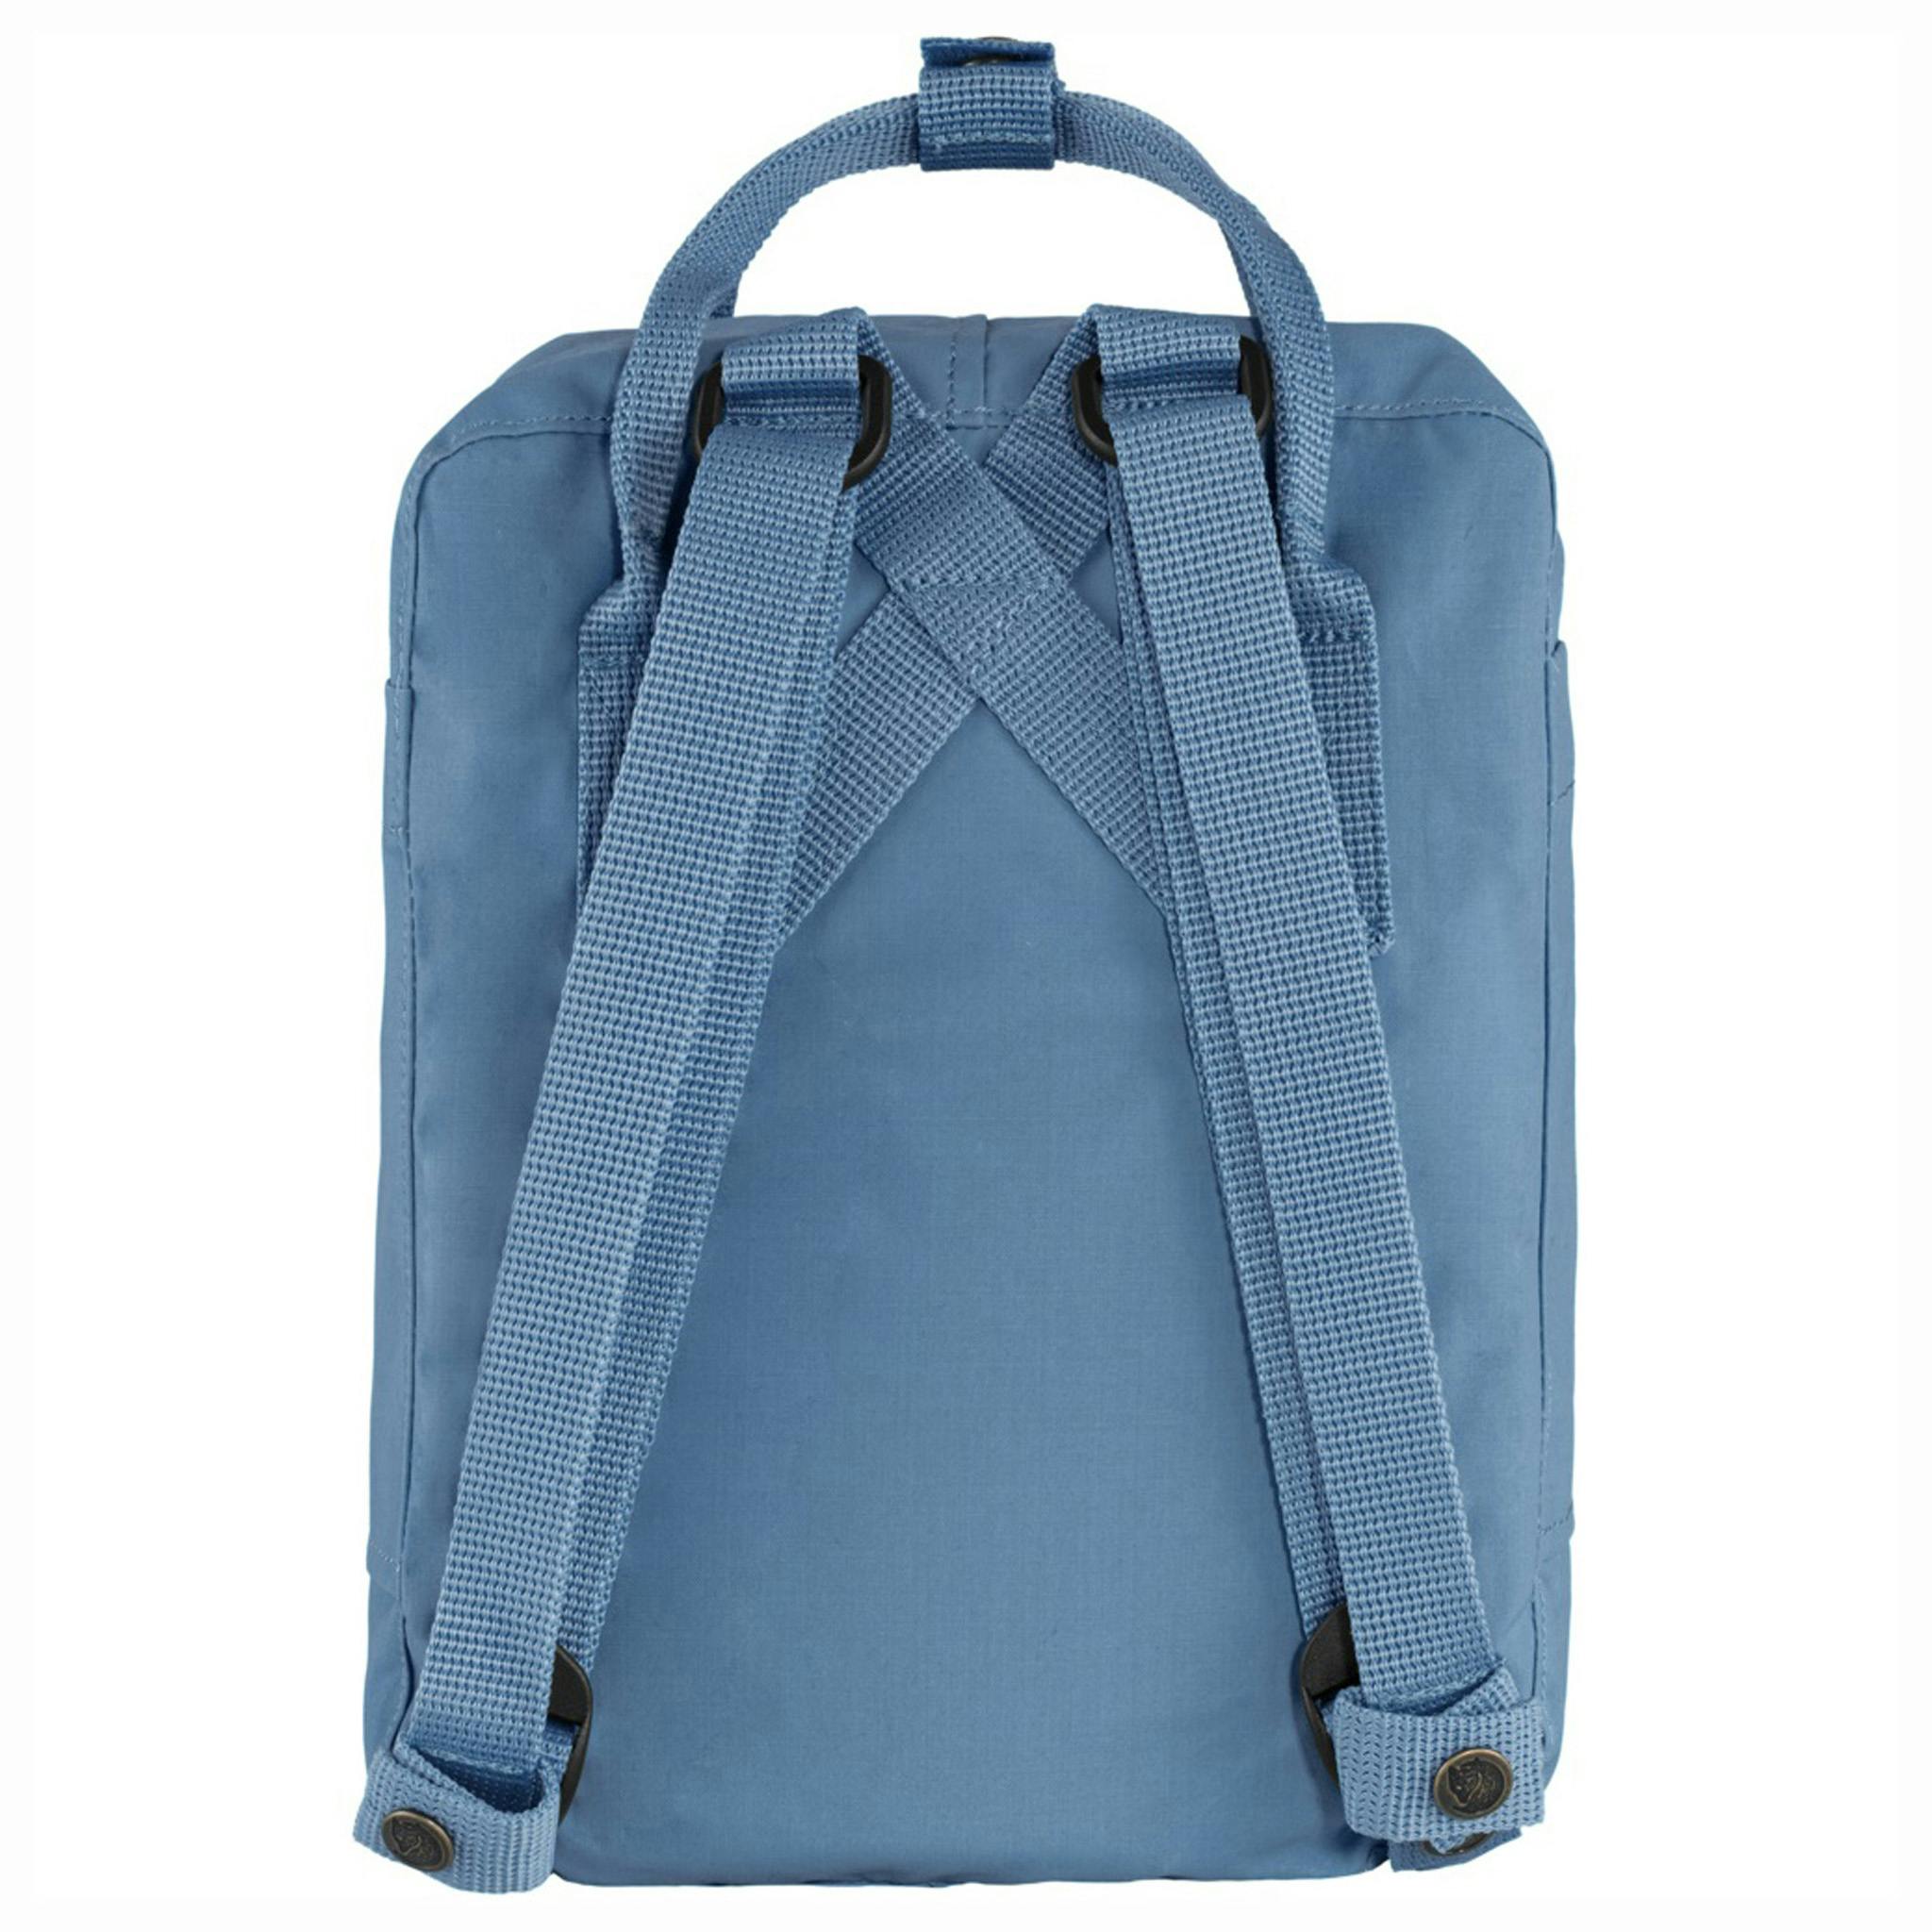 Kånken ryggsäcken i färgen blue ridge från Fjällräven.